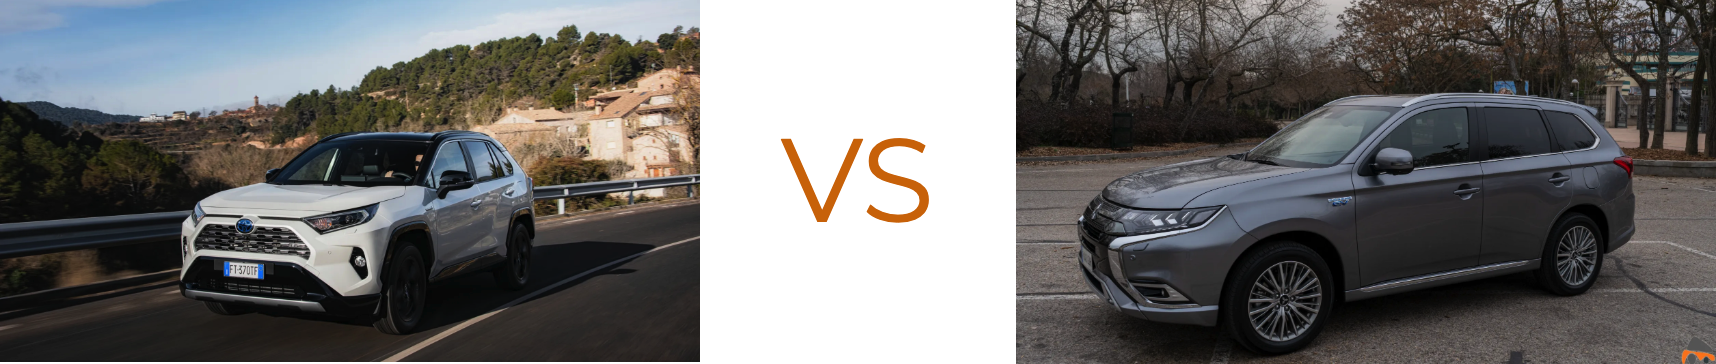 RAV4 VS Outlander - Toyota RAV4 Hybrid o Mitsubishi Outlander PHEV: ¿Cuál gasta menos?